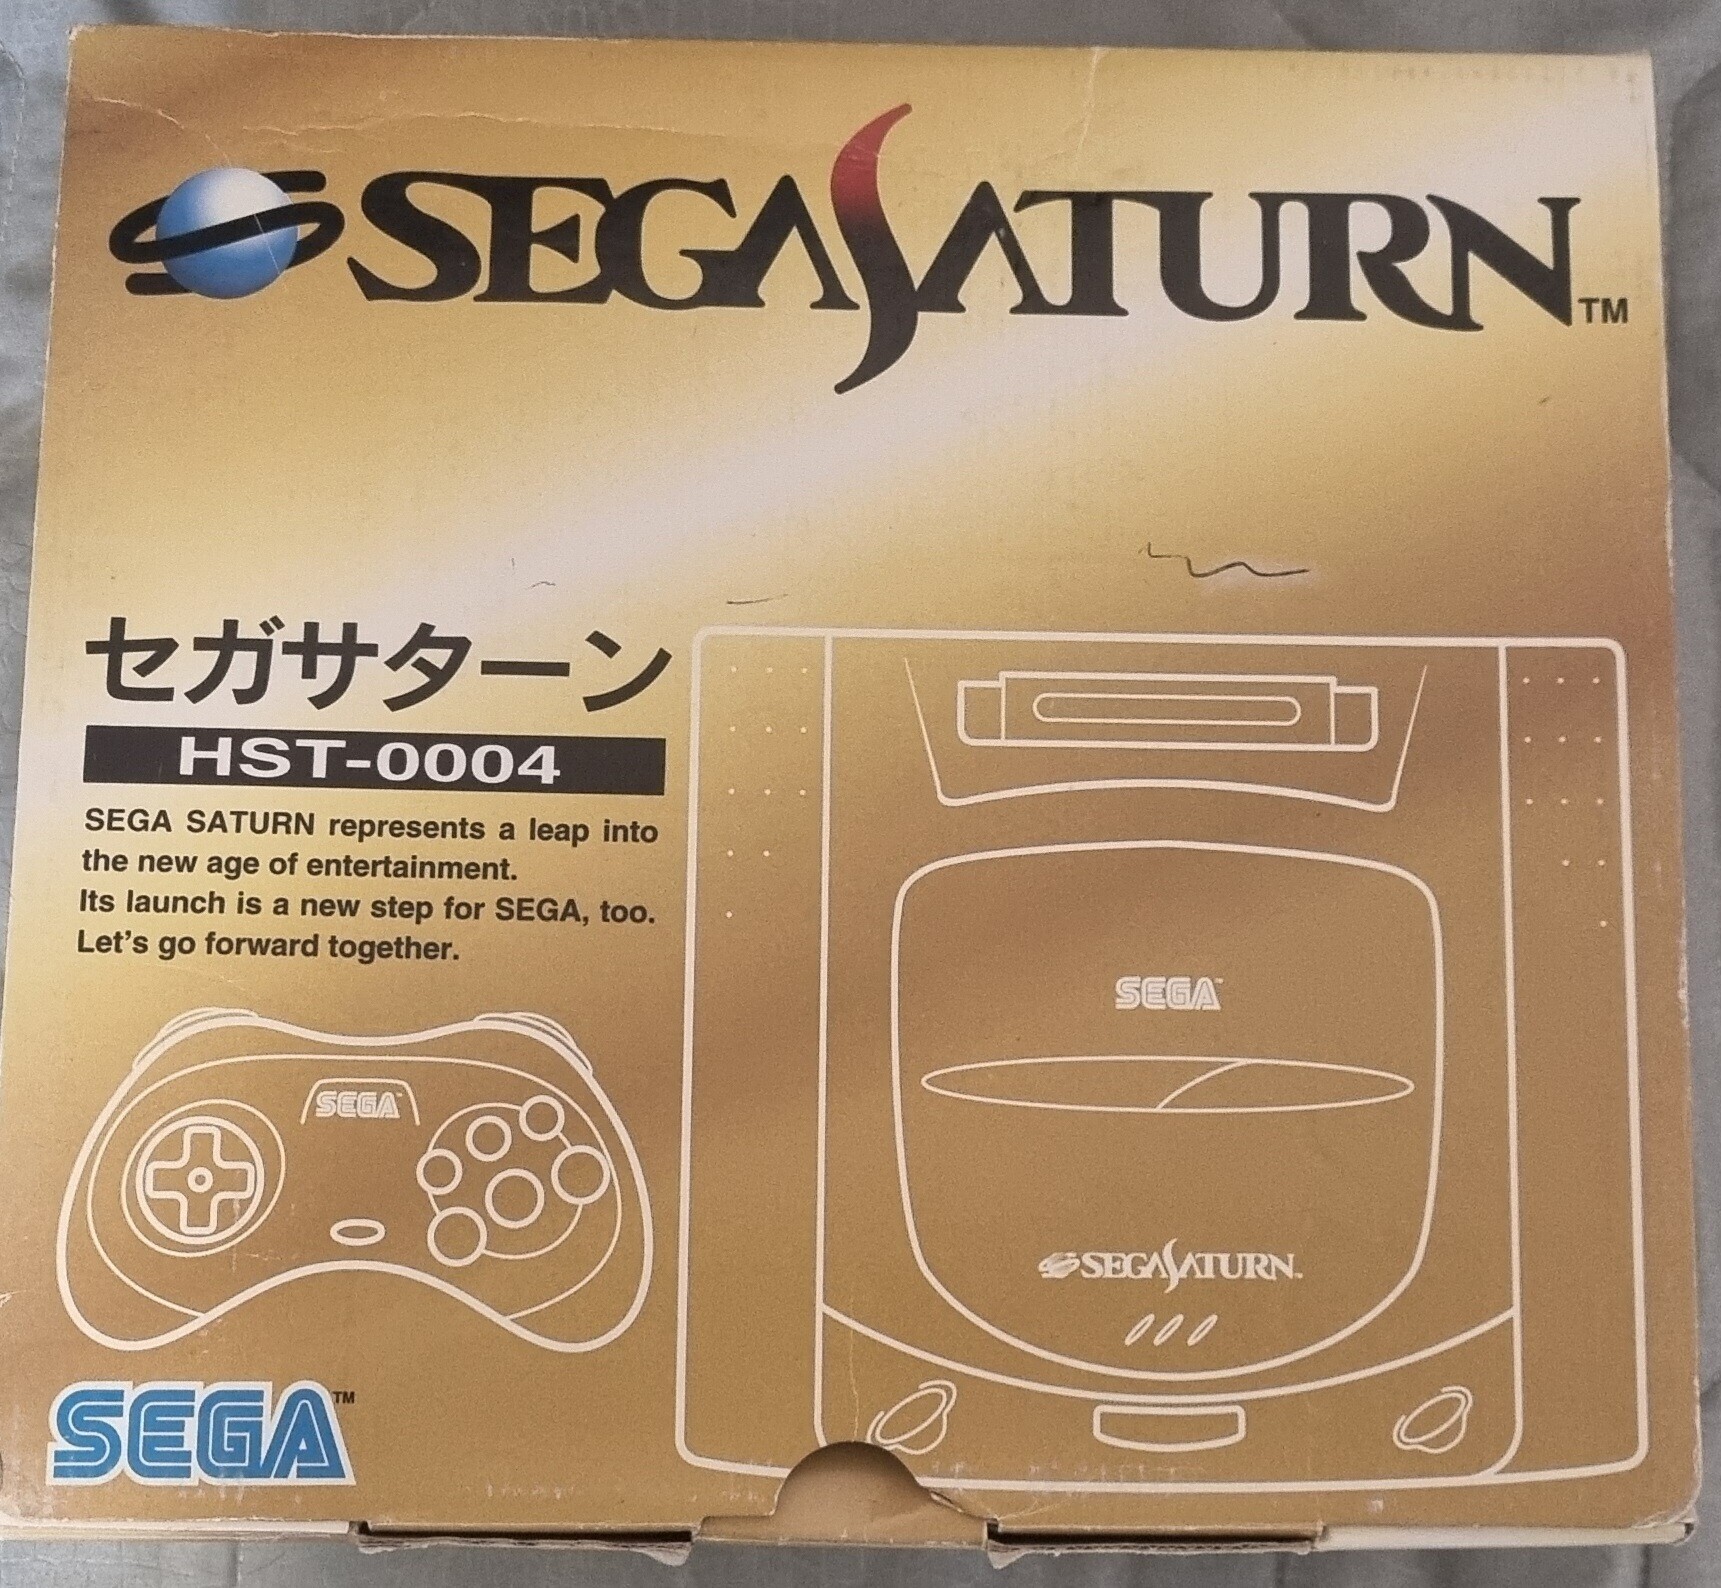  Sega Saturn HST-0004 Console